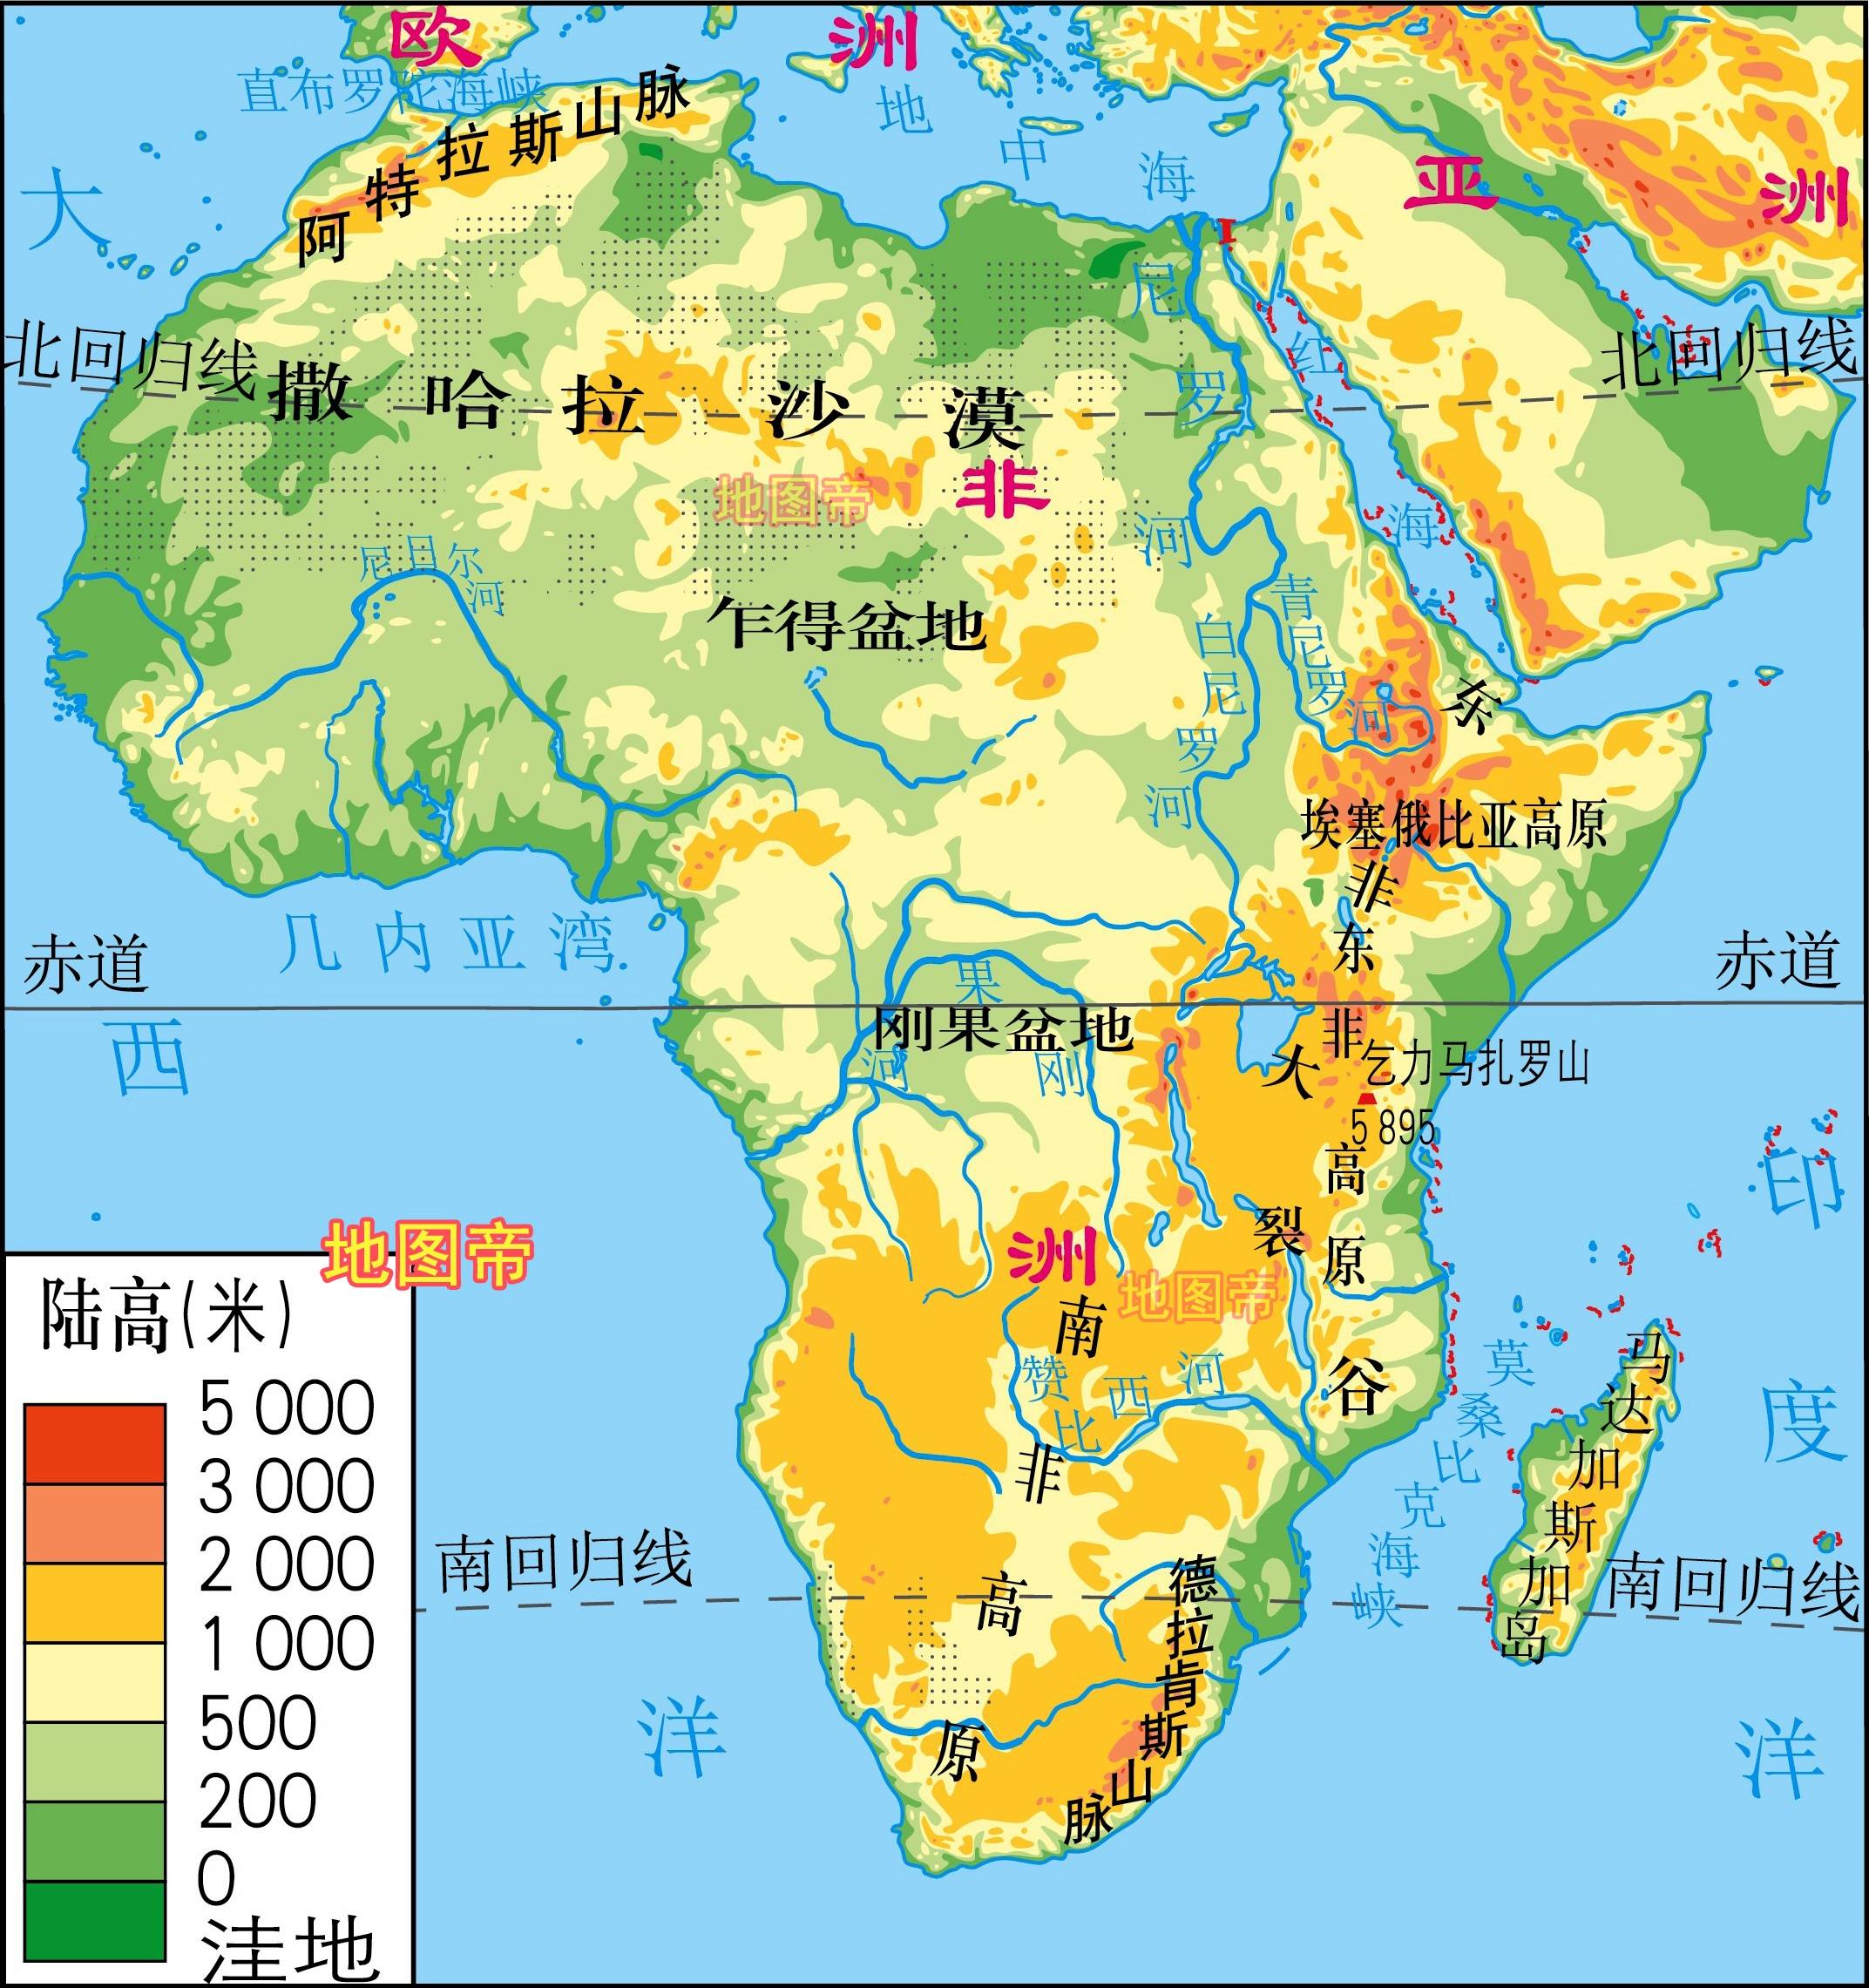 1亿(2019年). 撒哈拉沙漠面积约940万平方公里,为世界最大沙漠.